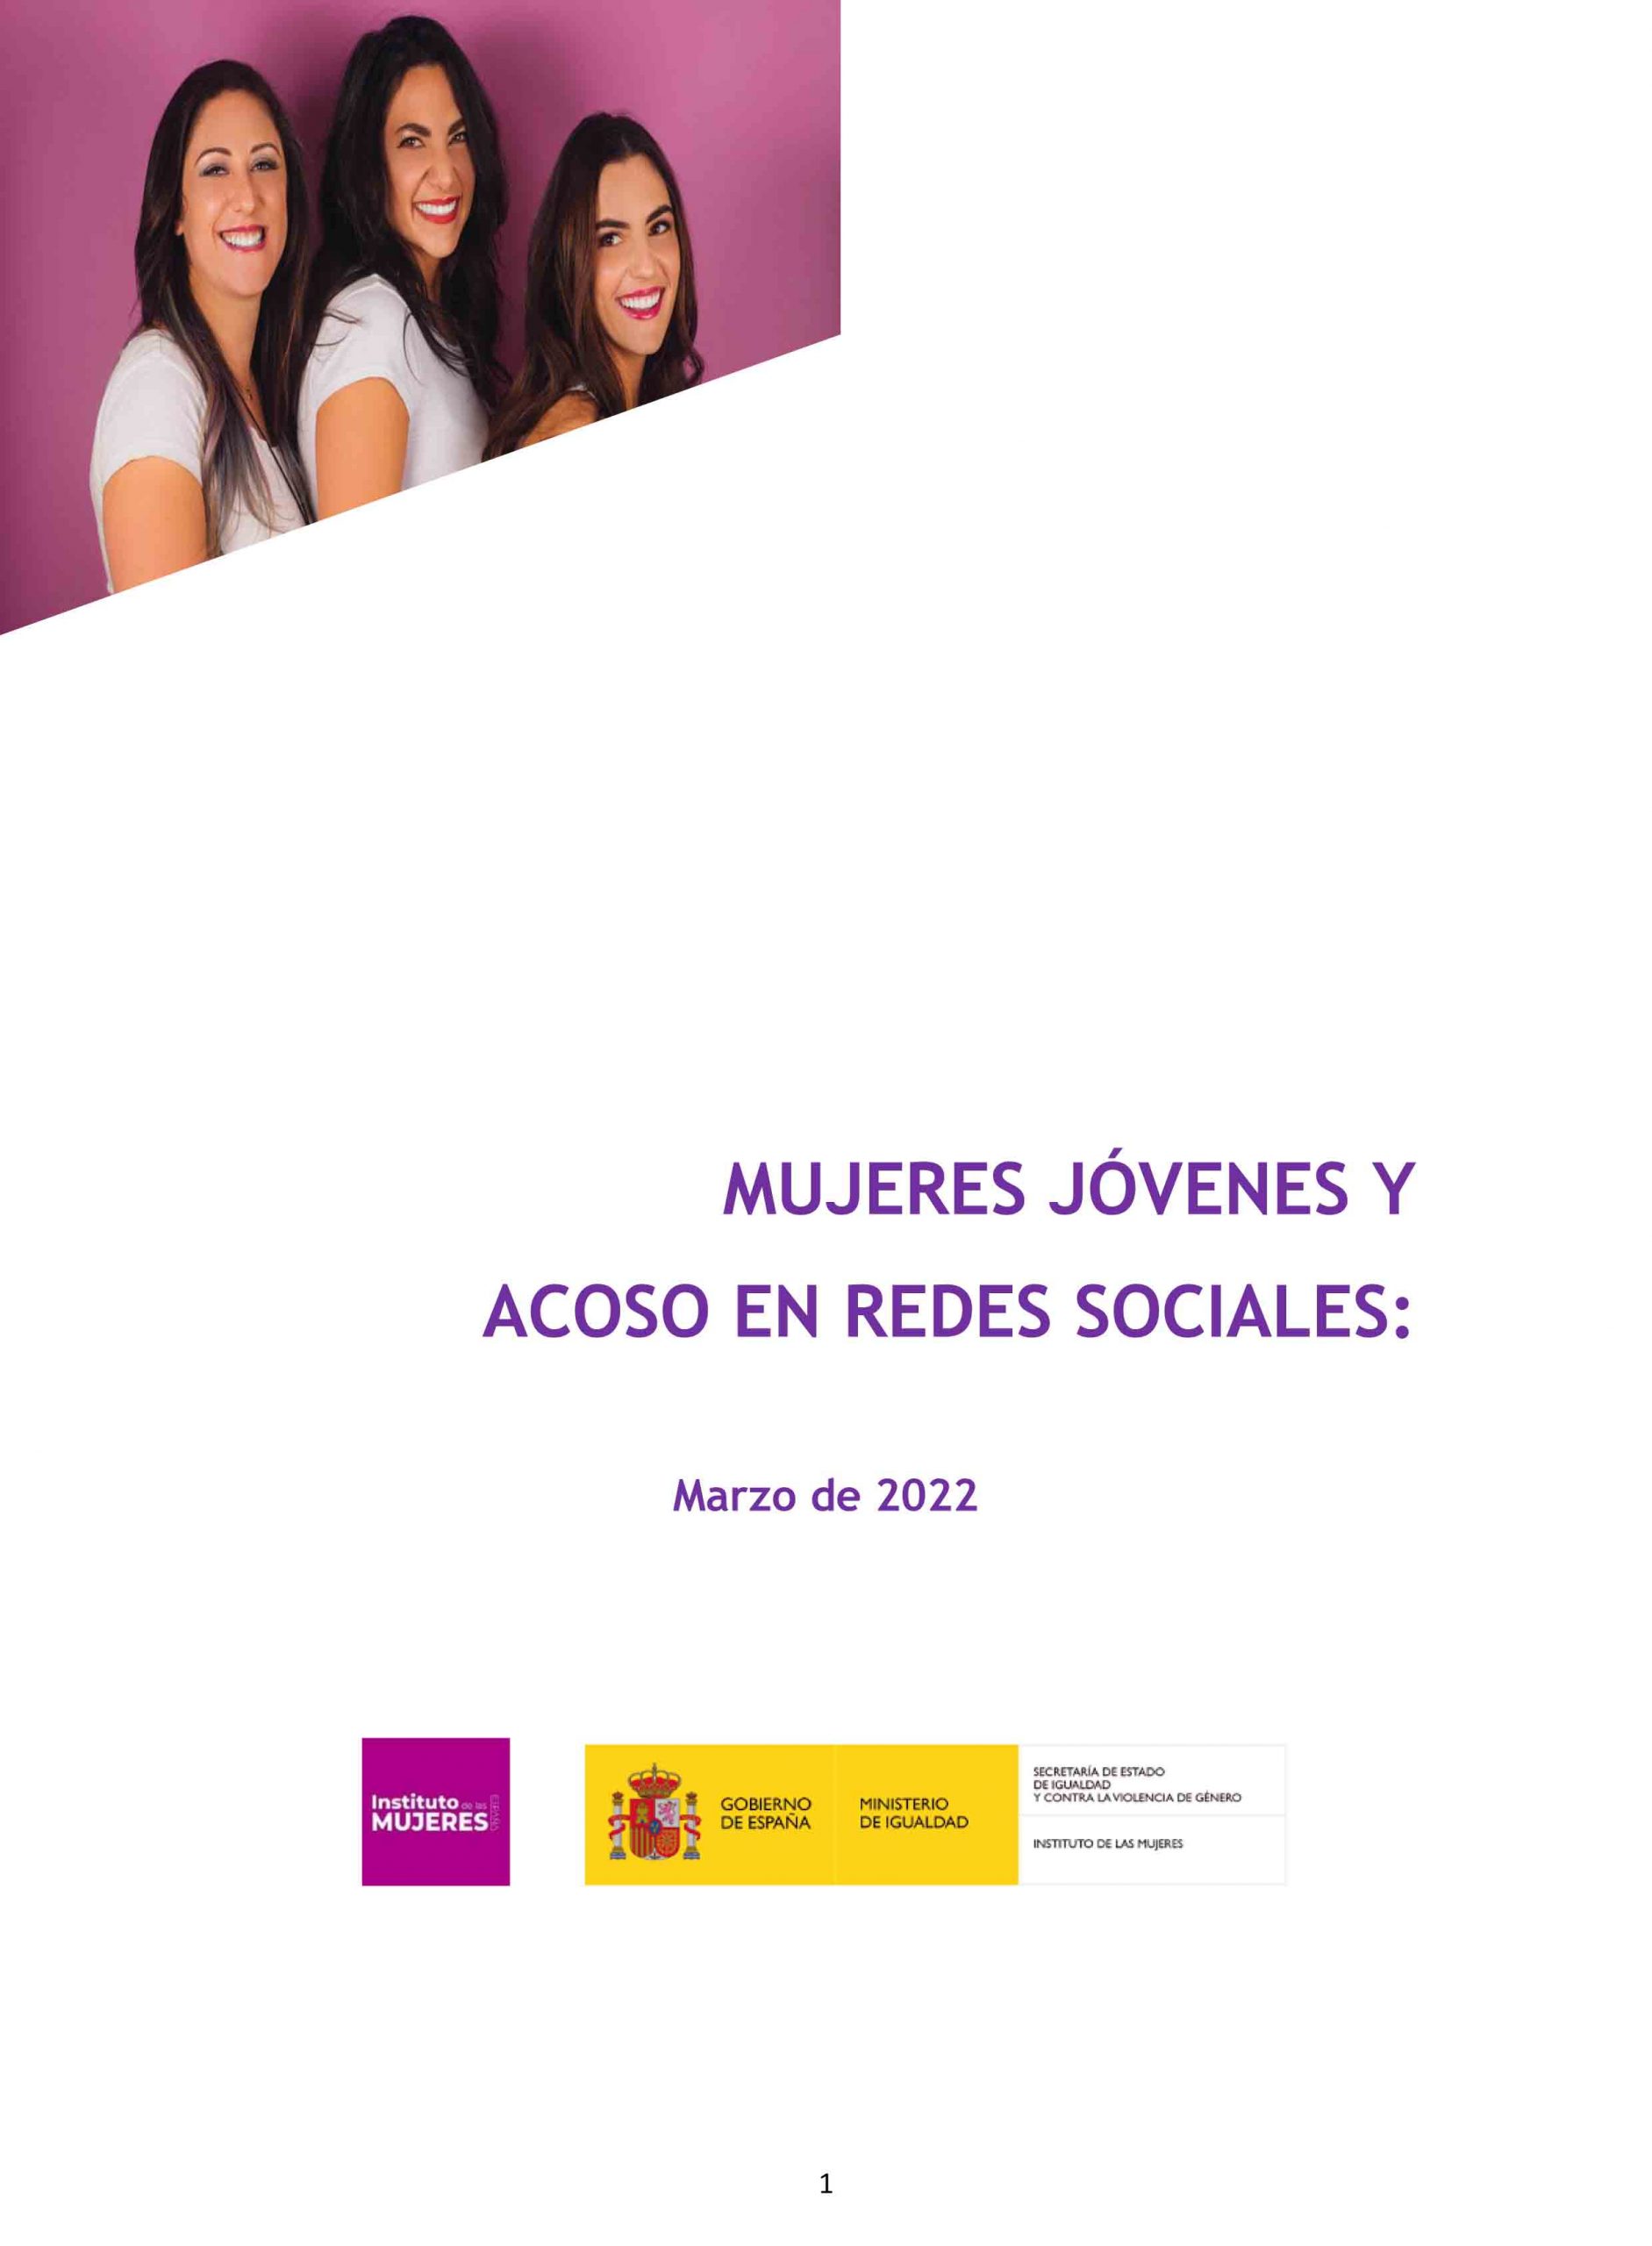 El Ministerio de Igualdad publica el estudio “Mujeres jóvenes y acoso en redes sociales: marzo de 2022”